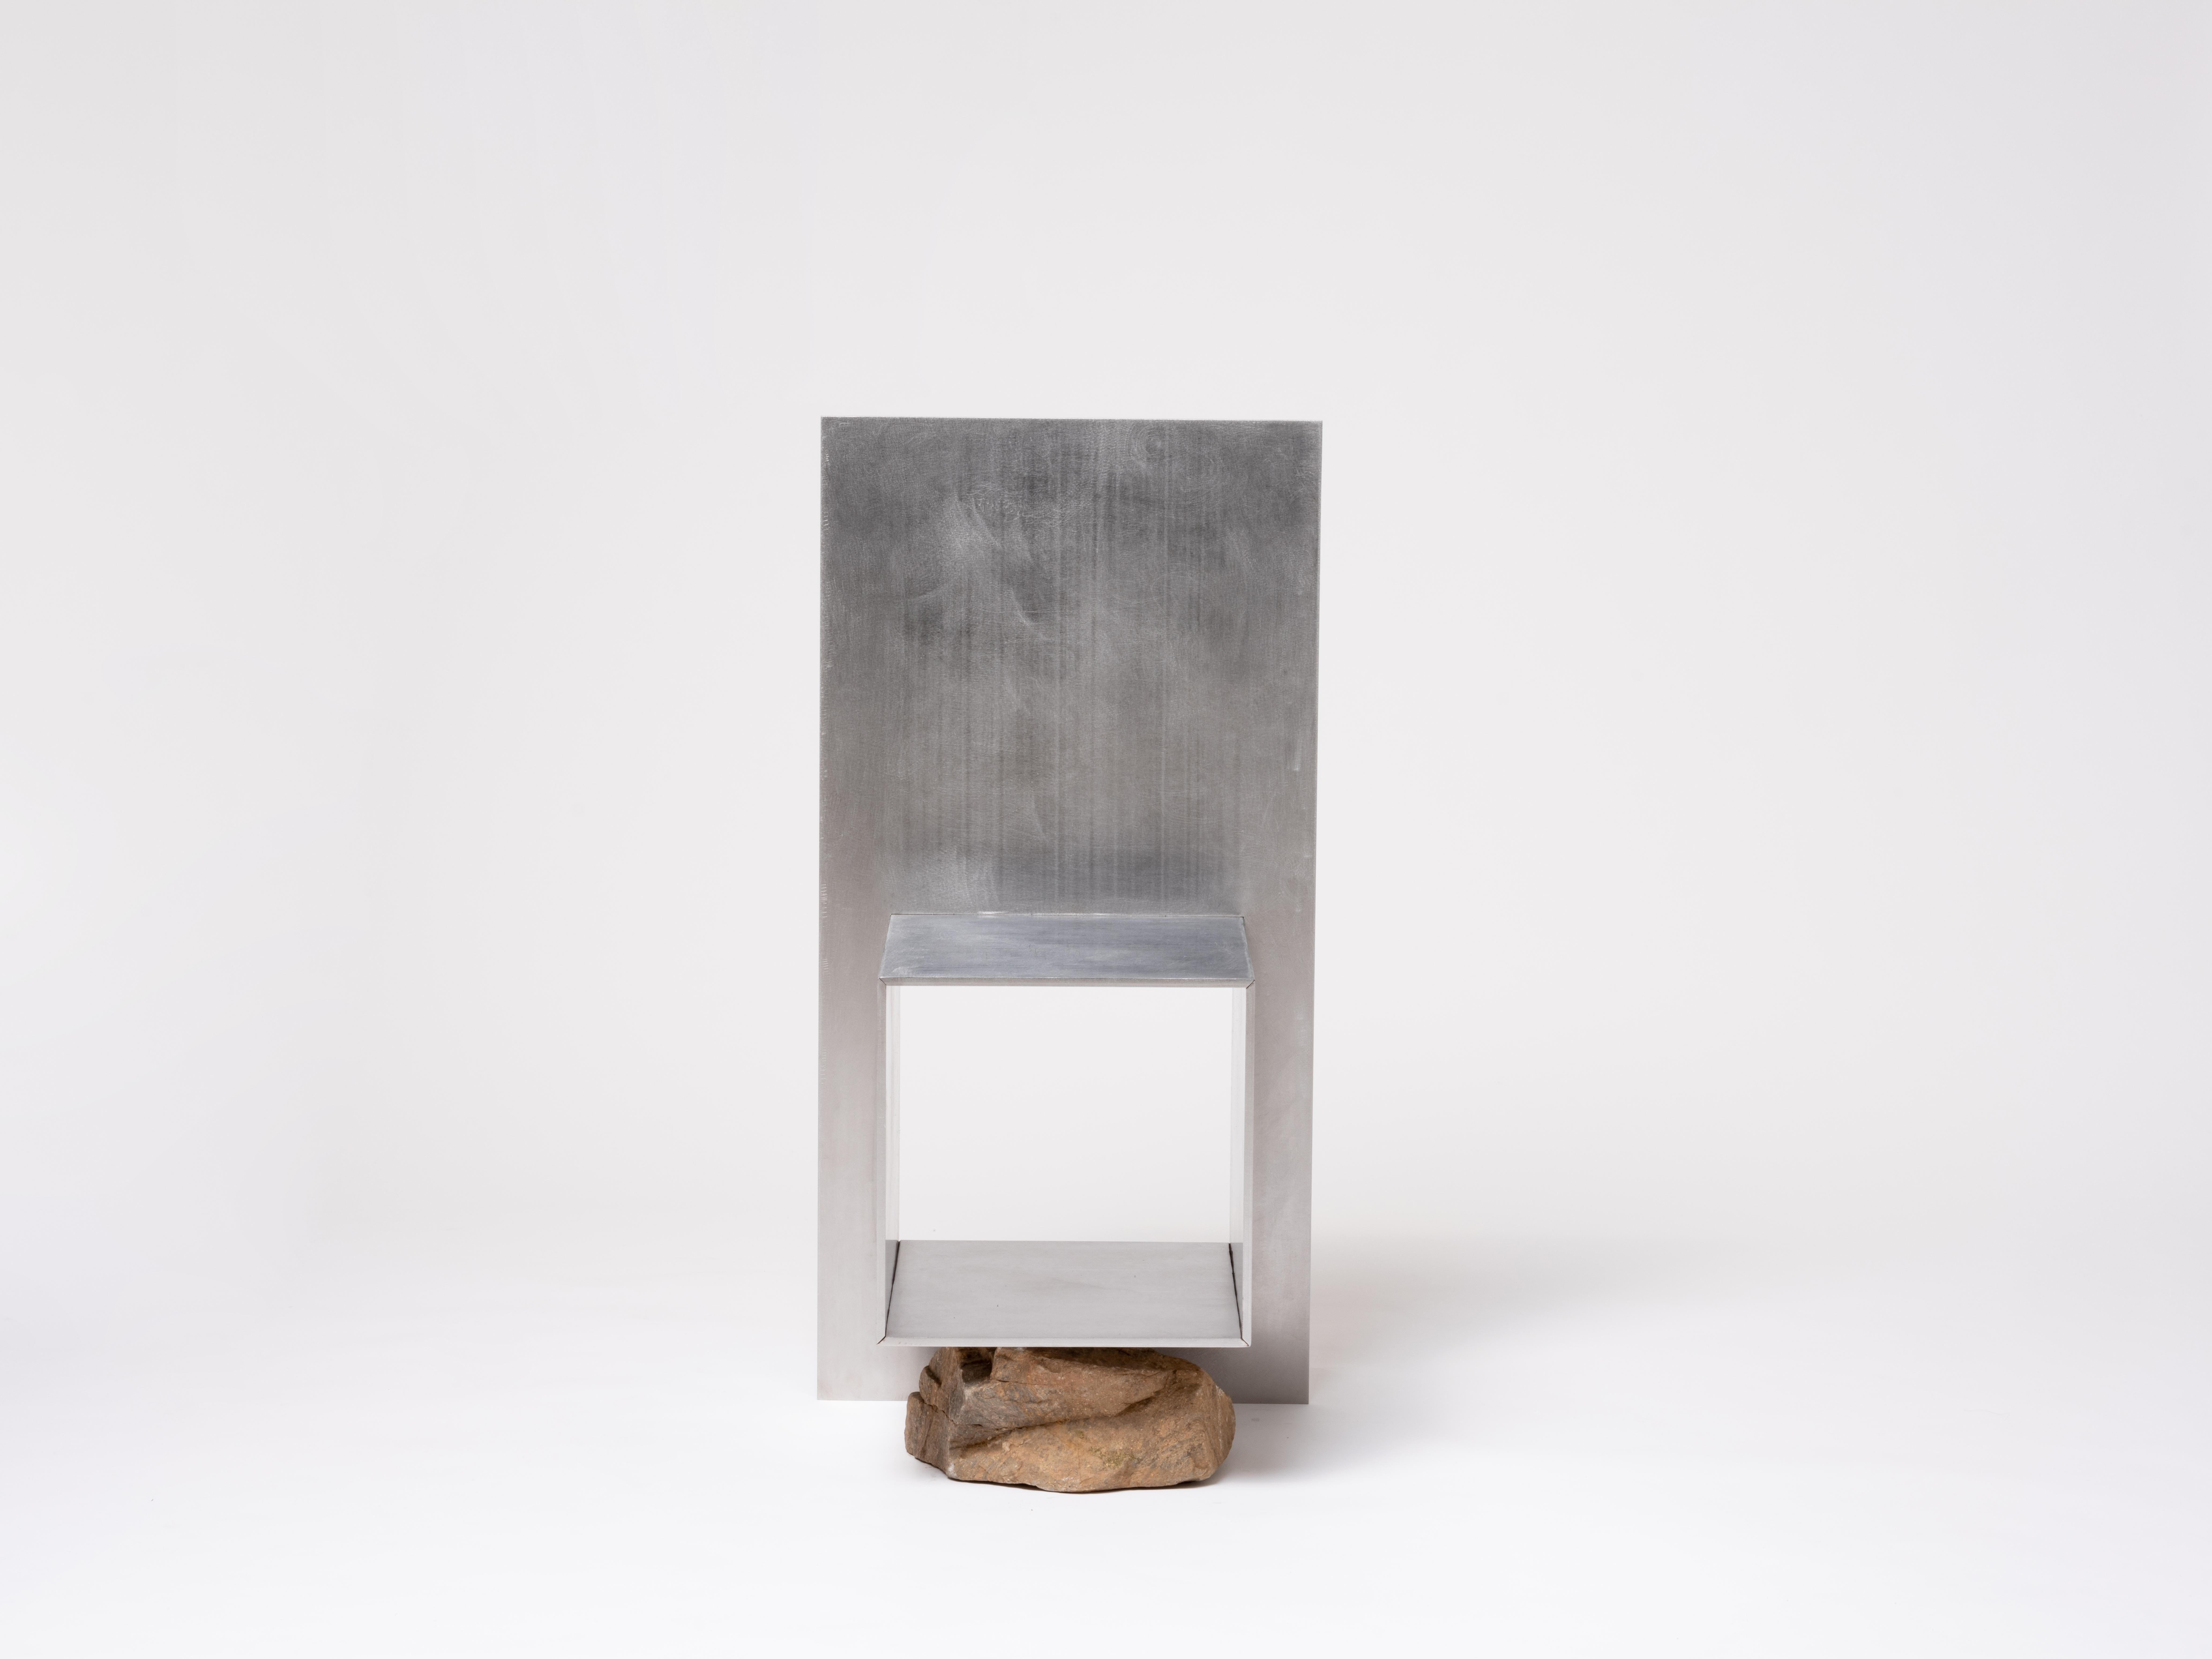 Proportions d'une chaise en pierre par Lee Sisan, 2019
Dimensions : L 45 x P 41 x H 90 cm
Matériaux : Acier inoxydable, pierre naturelle.

Chaque pièce est fabriquée sur commande et utilise des pierres naturelles. Il faut donc s'attendre à une